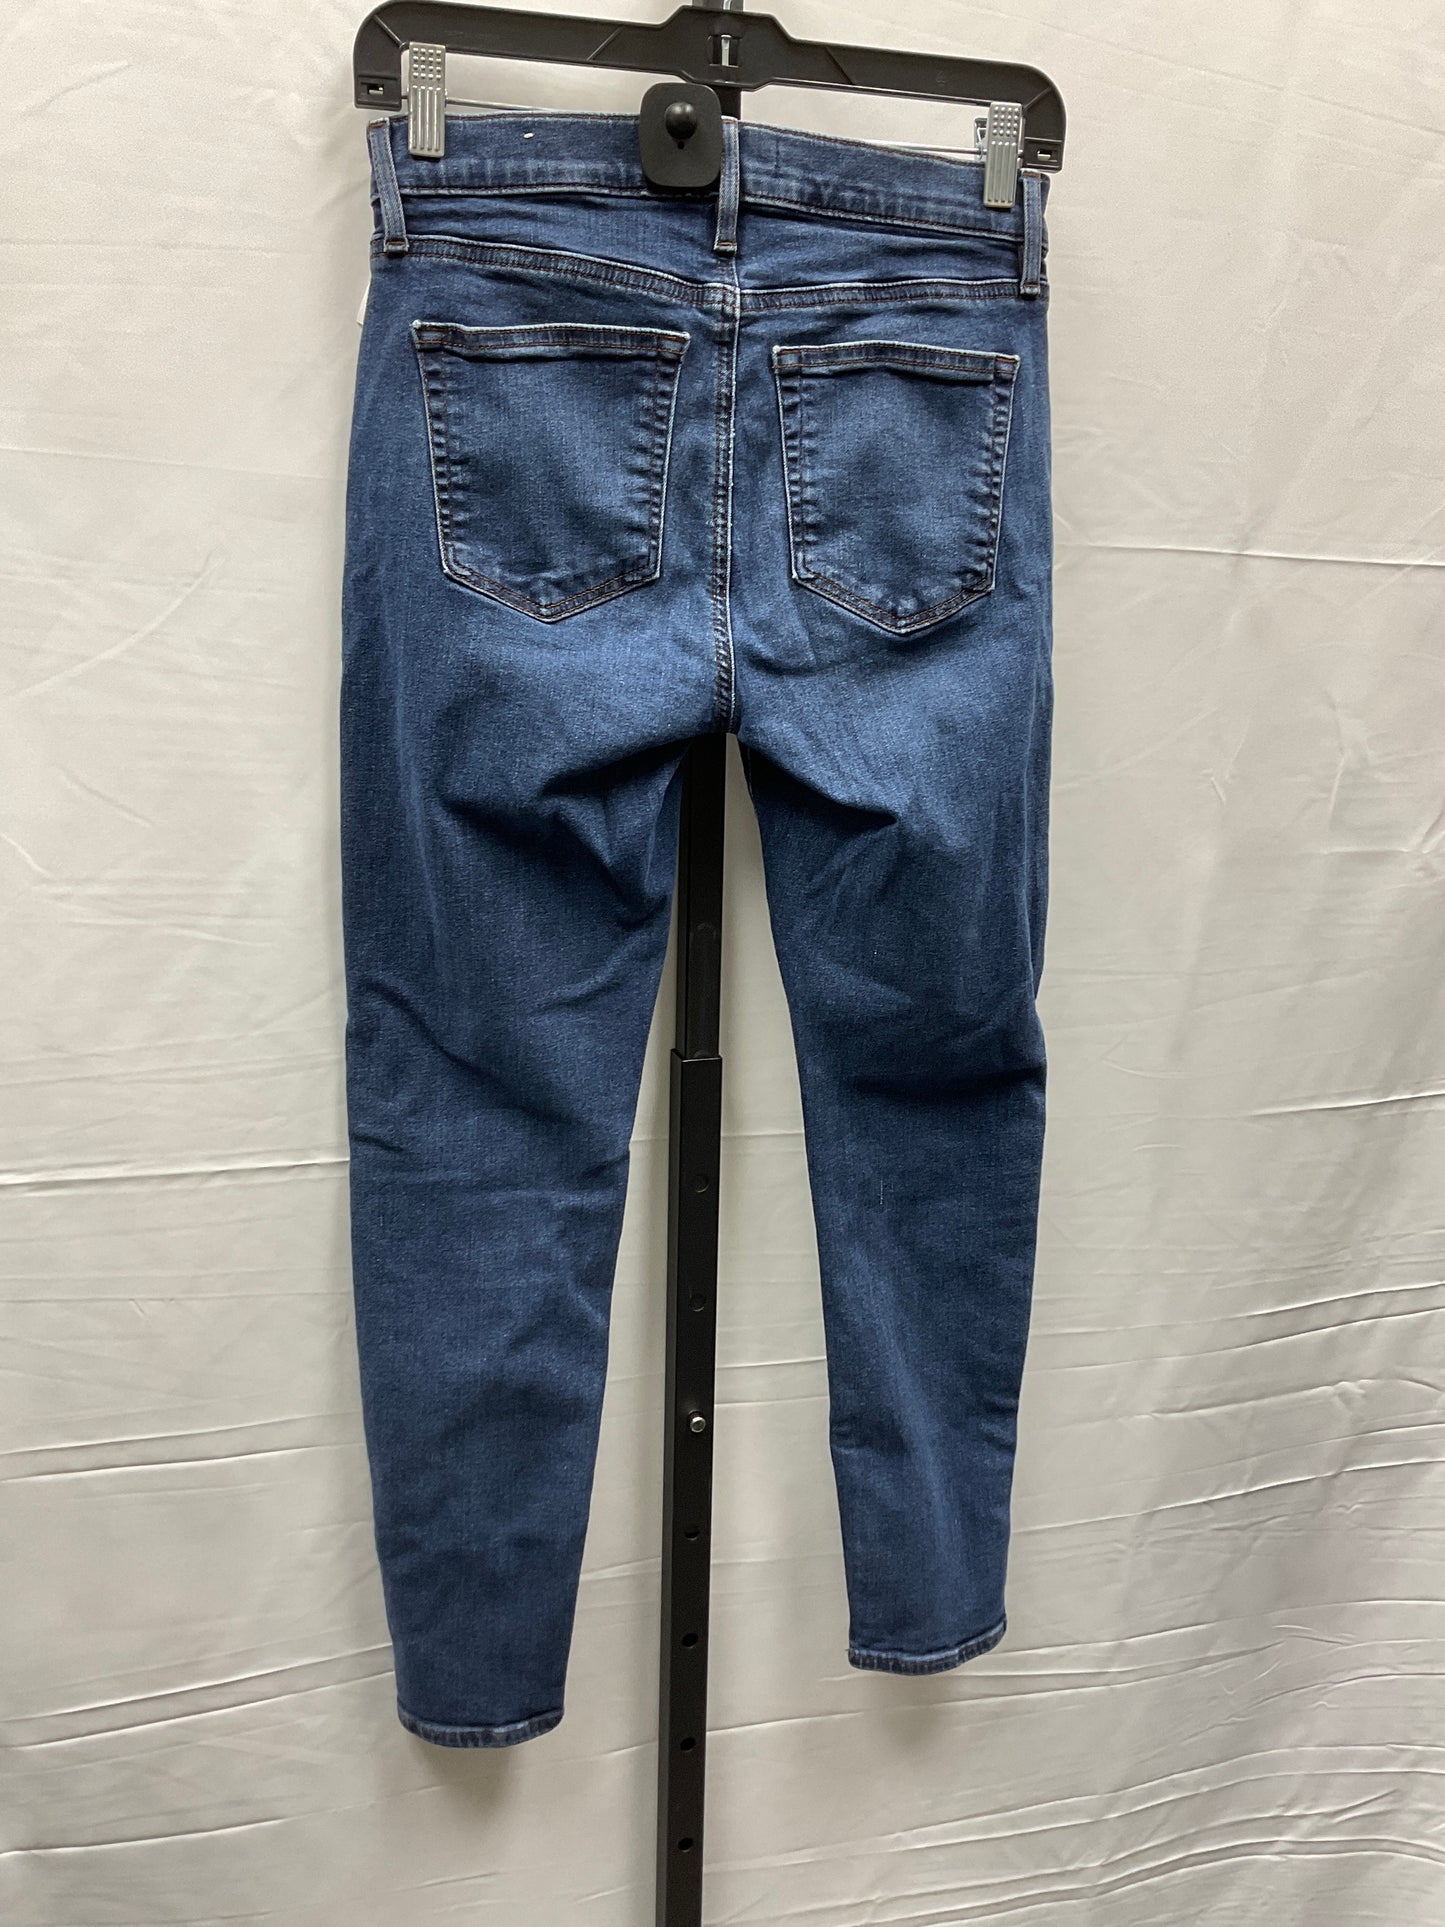 Jeans Cropped By Loft  Size: 4